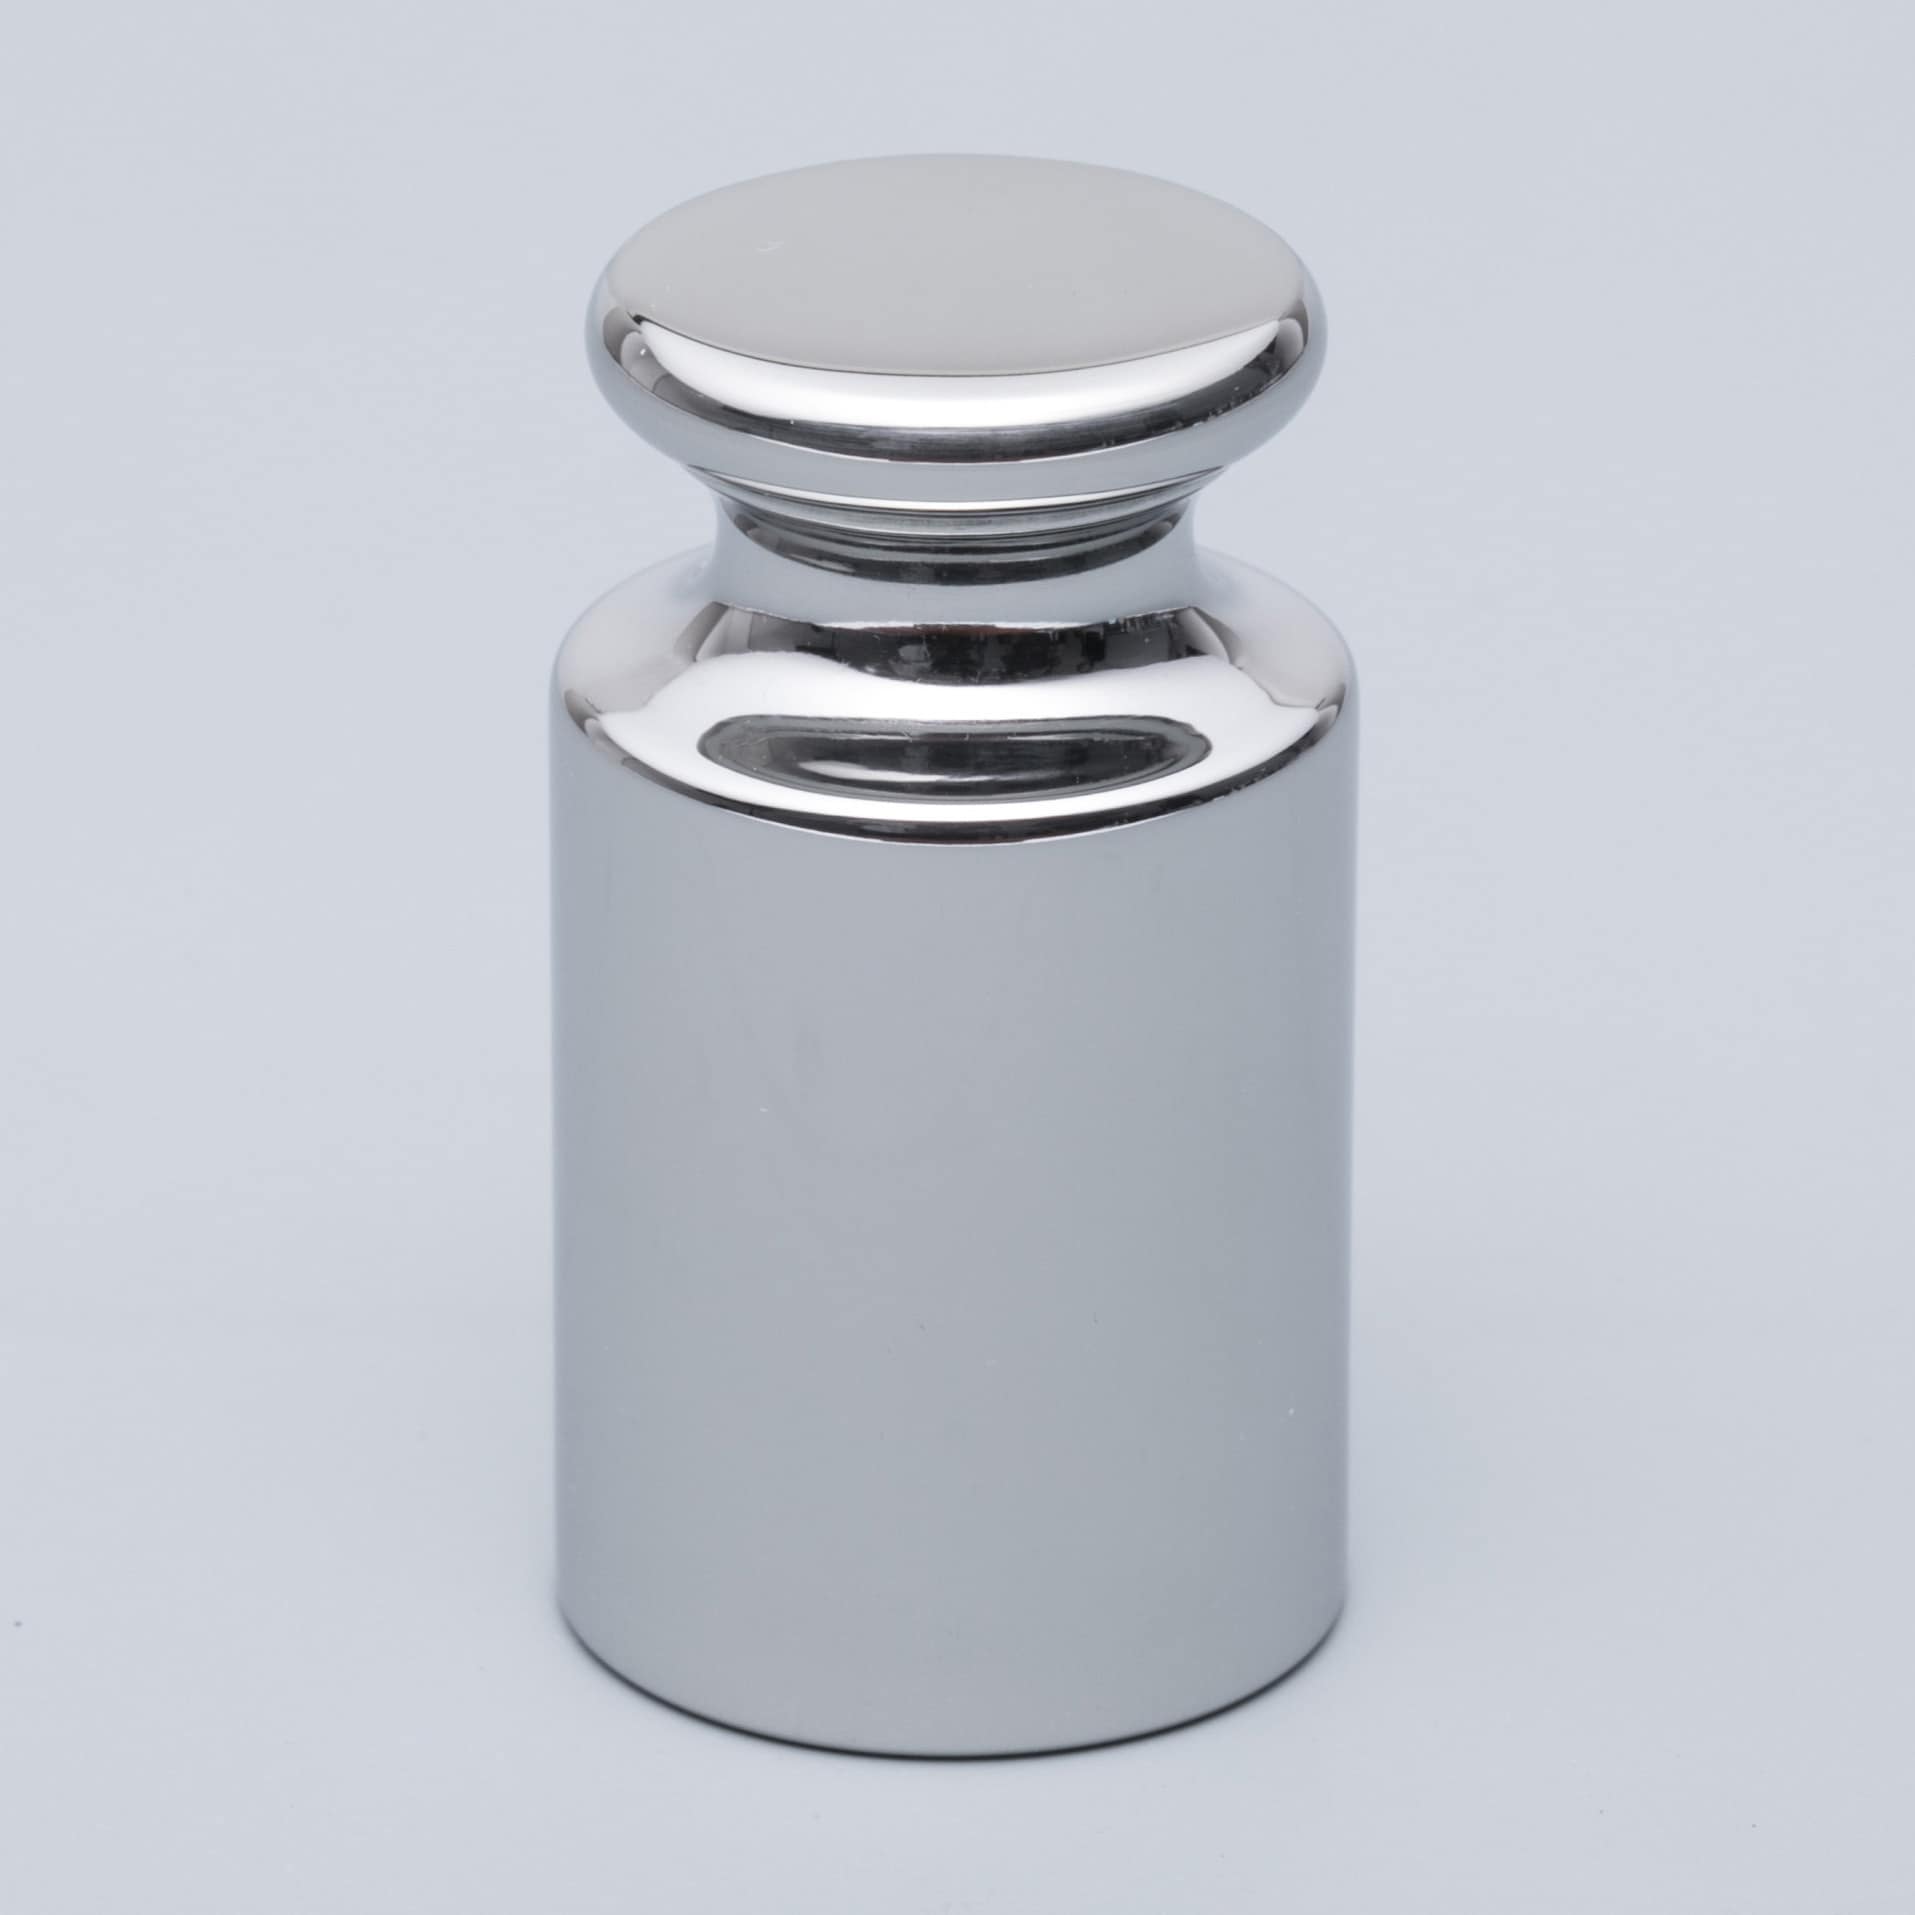 初回限定お試し価格 ViBRA :JISマーク付OIML型円筒分銅(非磁性